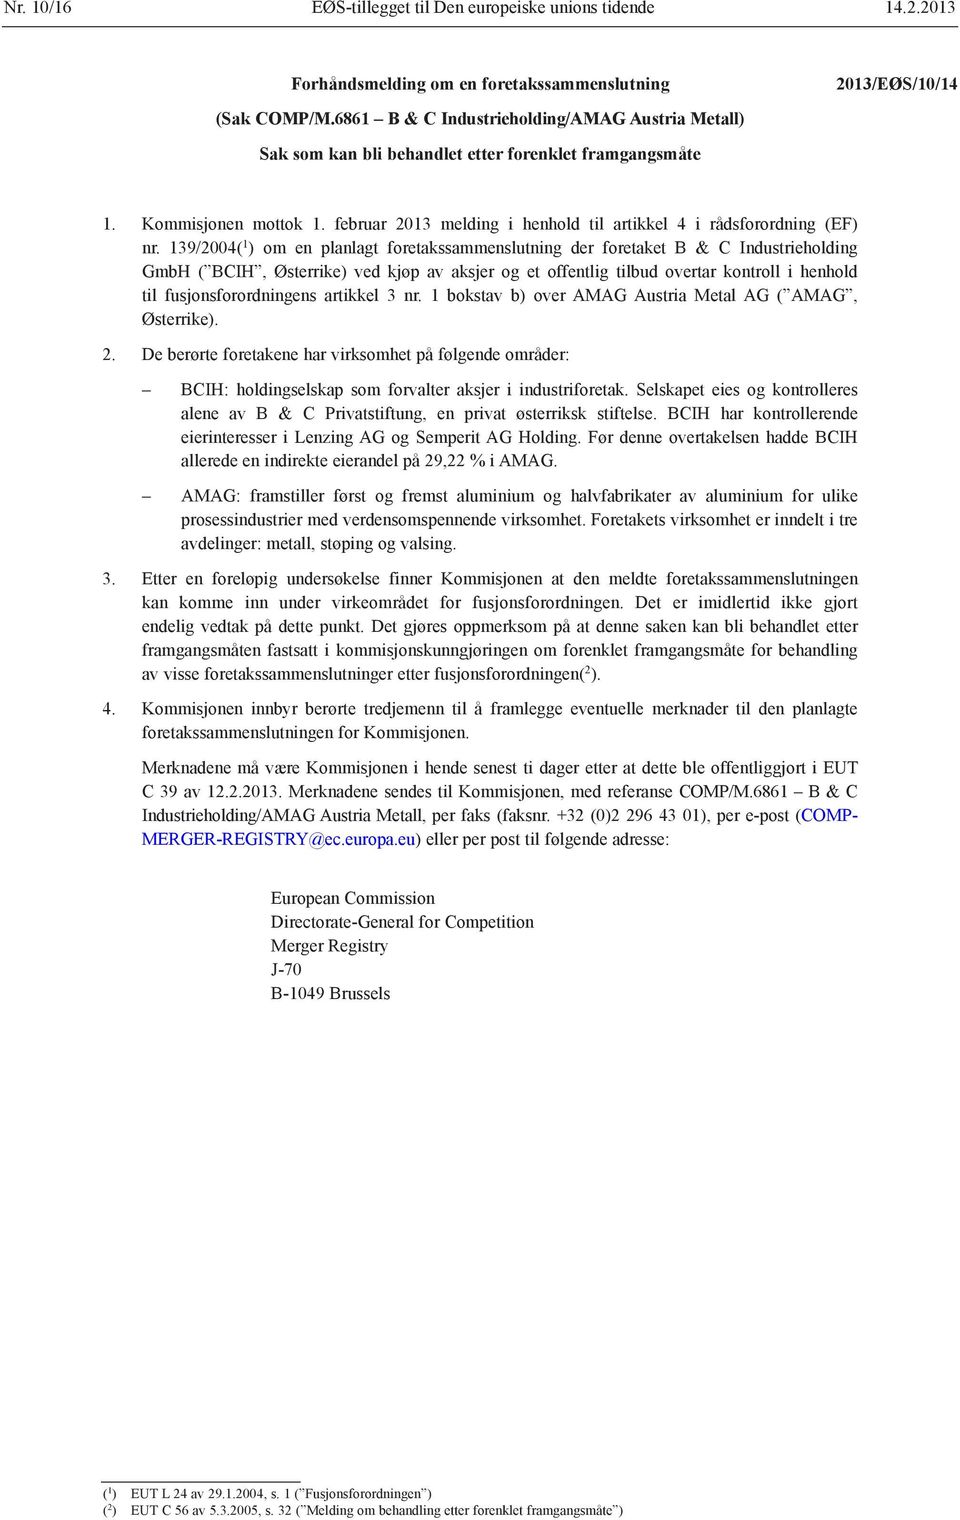 februar 2013 melding i henhold til artikkel 4 i rådsforordning (EF) nr.